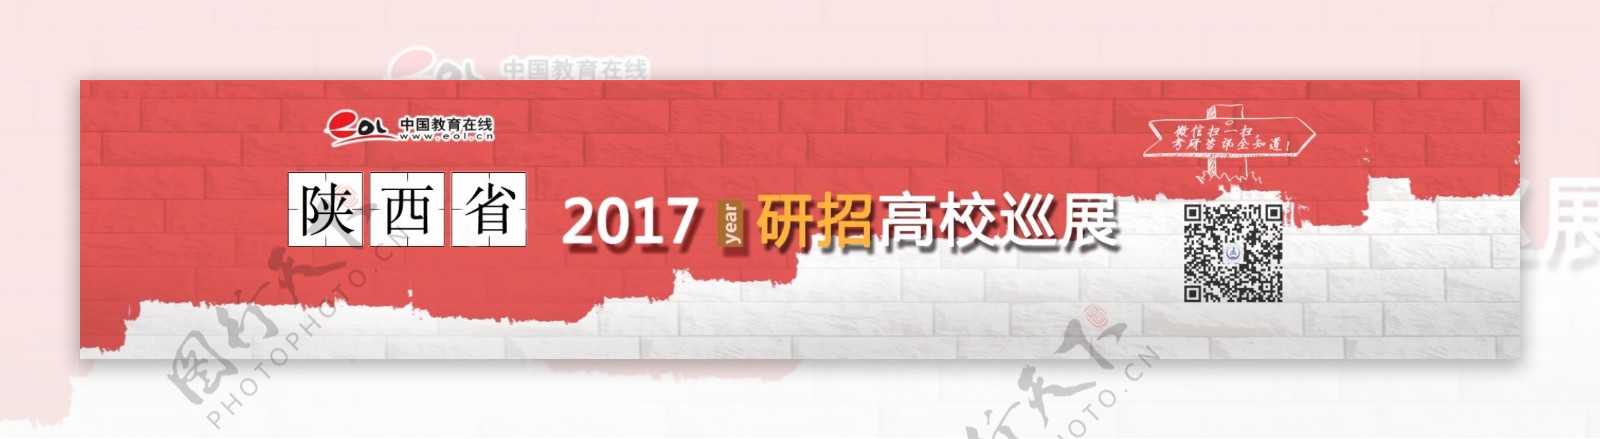 陕西省2017研招巡展会banner